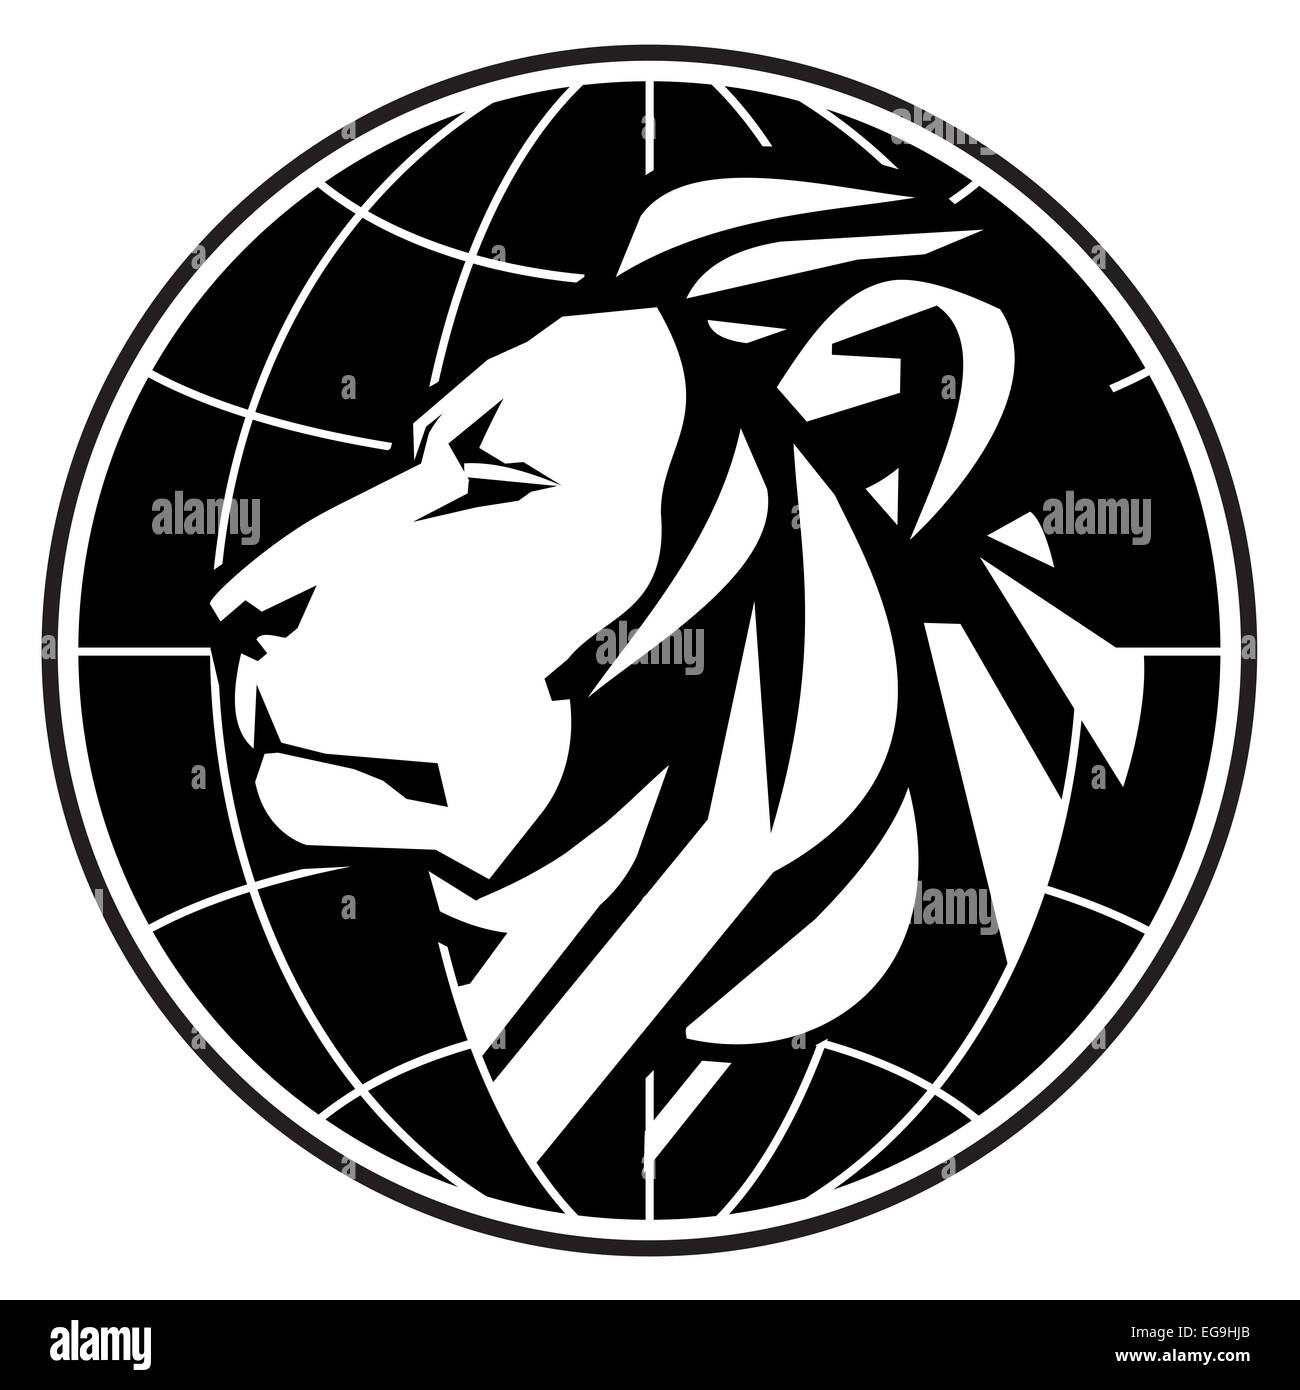 Le lion stylisé sur un fond blanc. vector illustration Banque D'Images